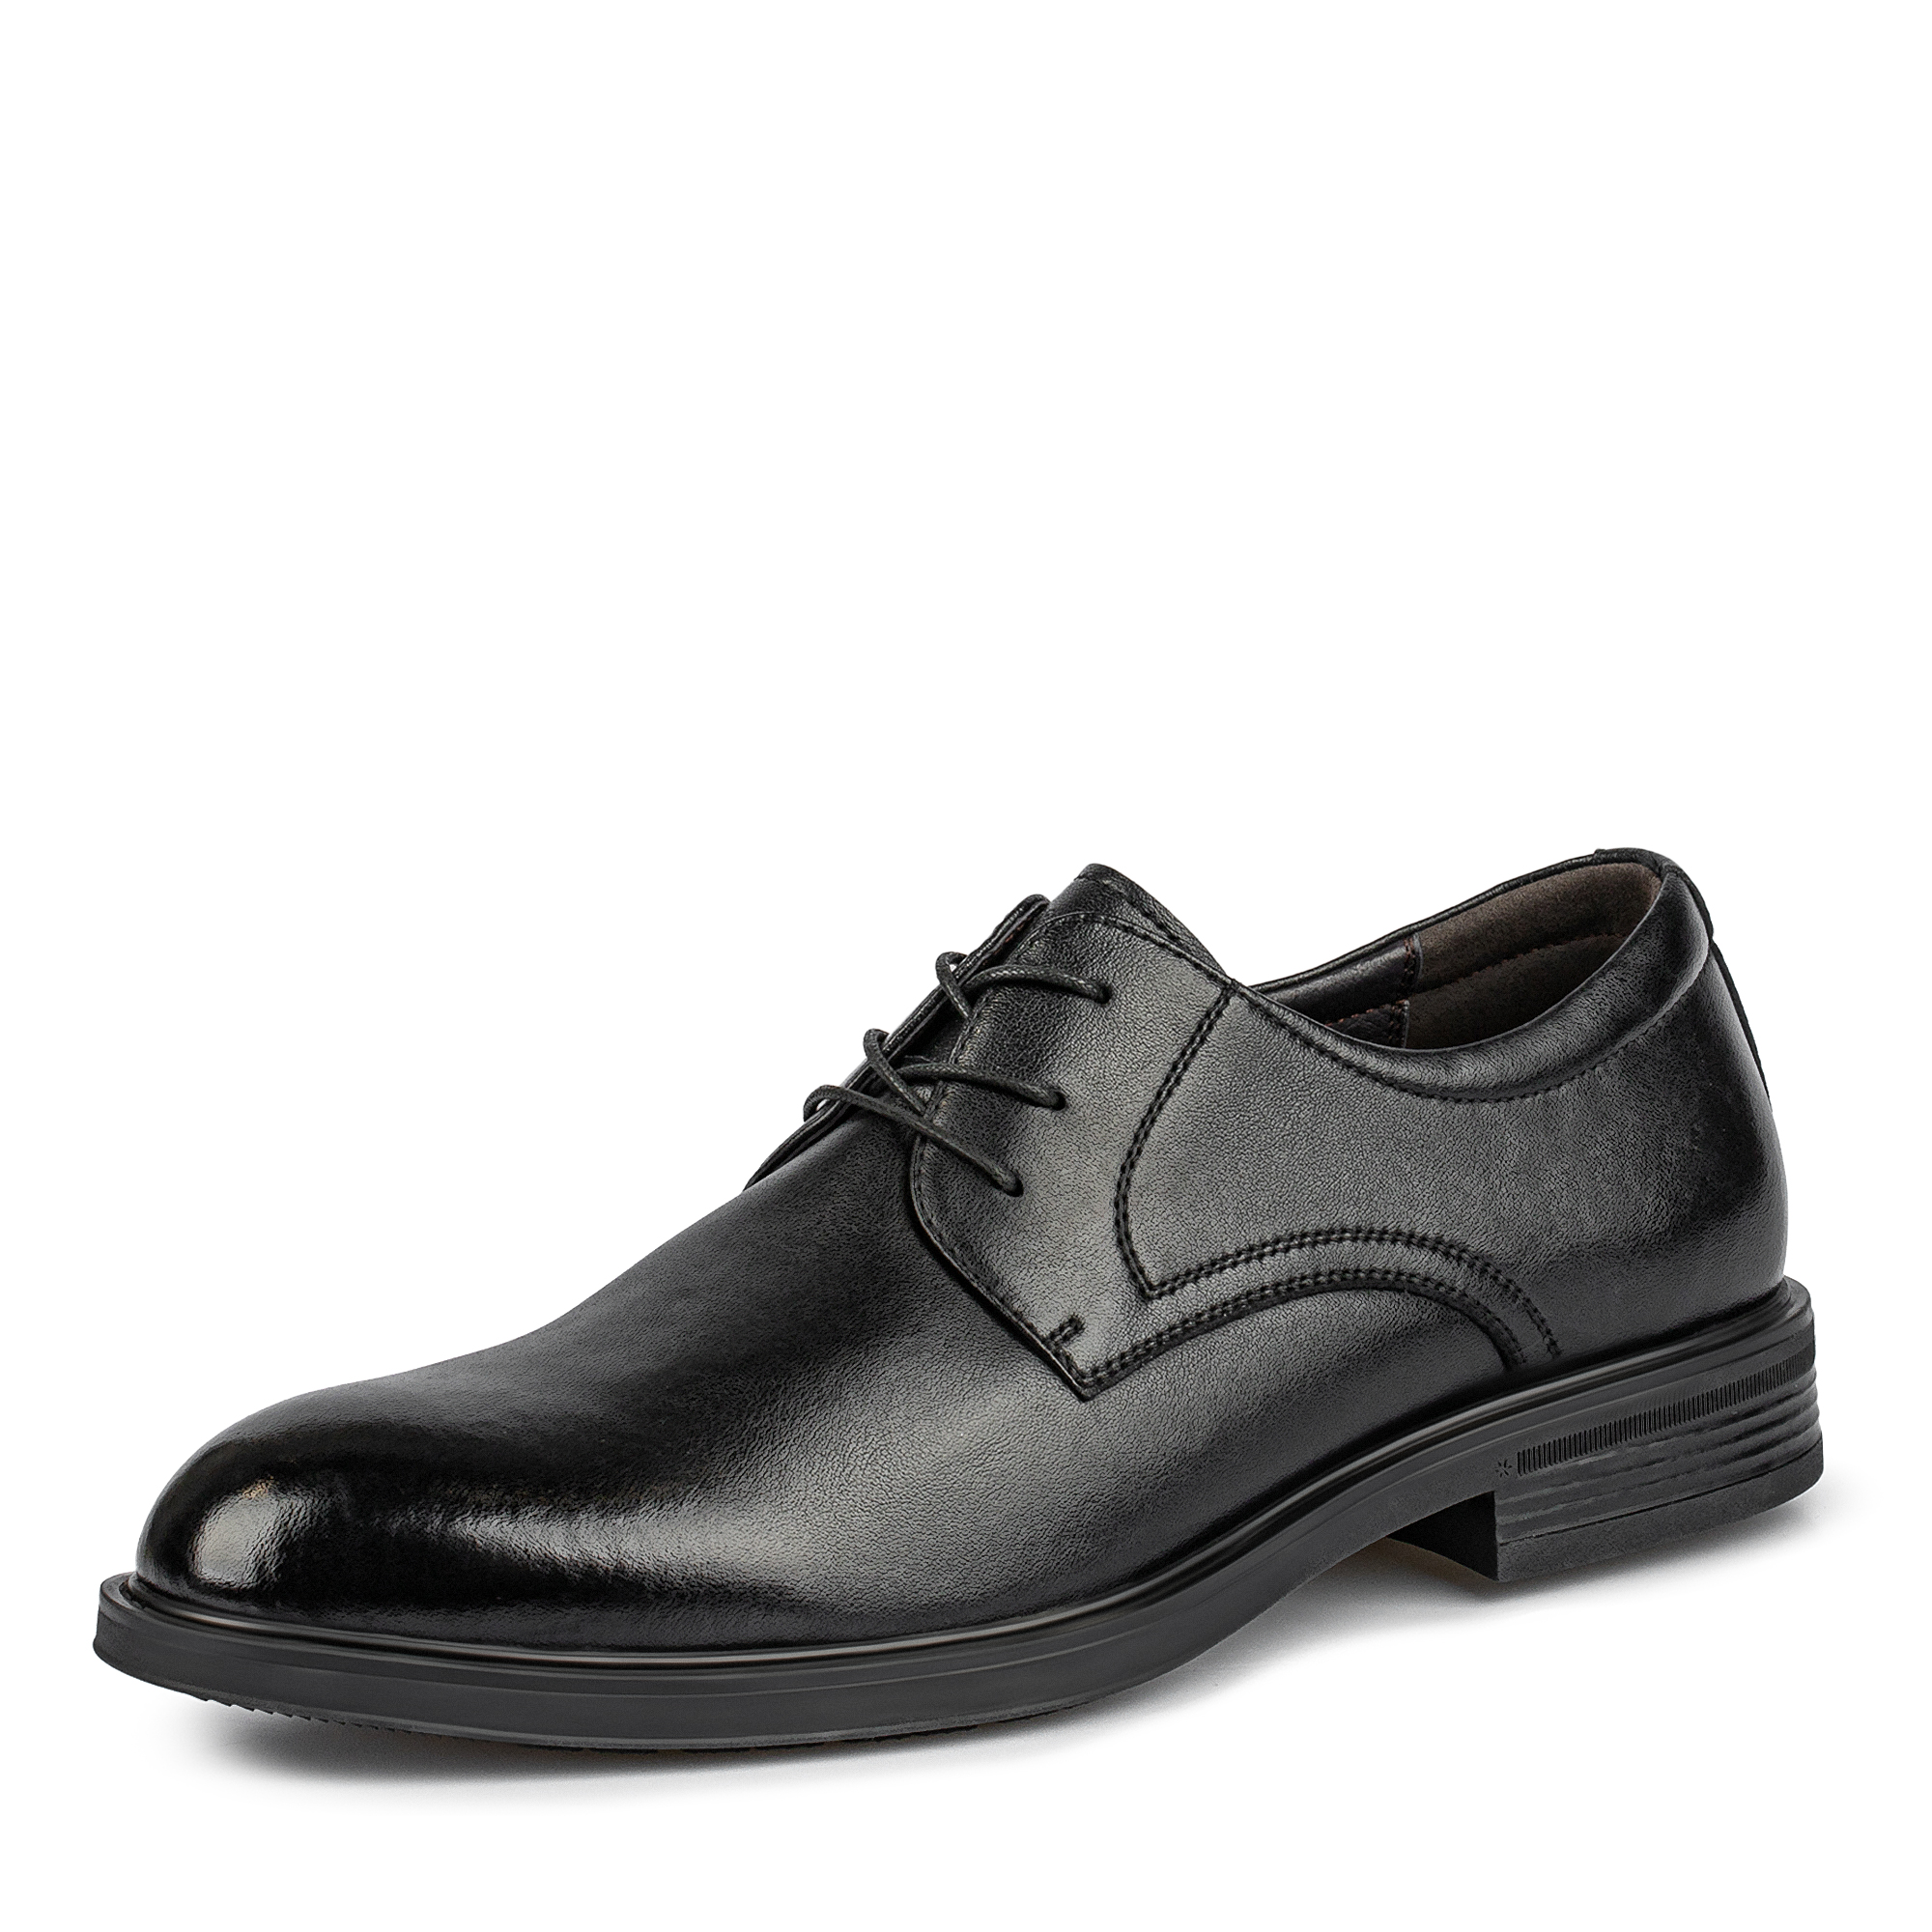 Туфли/полуботинки Thomas Munz 104-647A-1602, цвет черный, размер 42 - фото 2